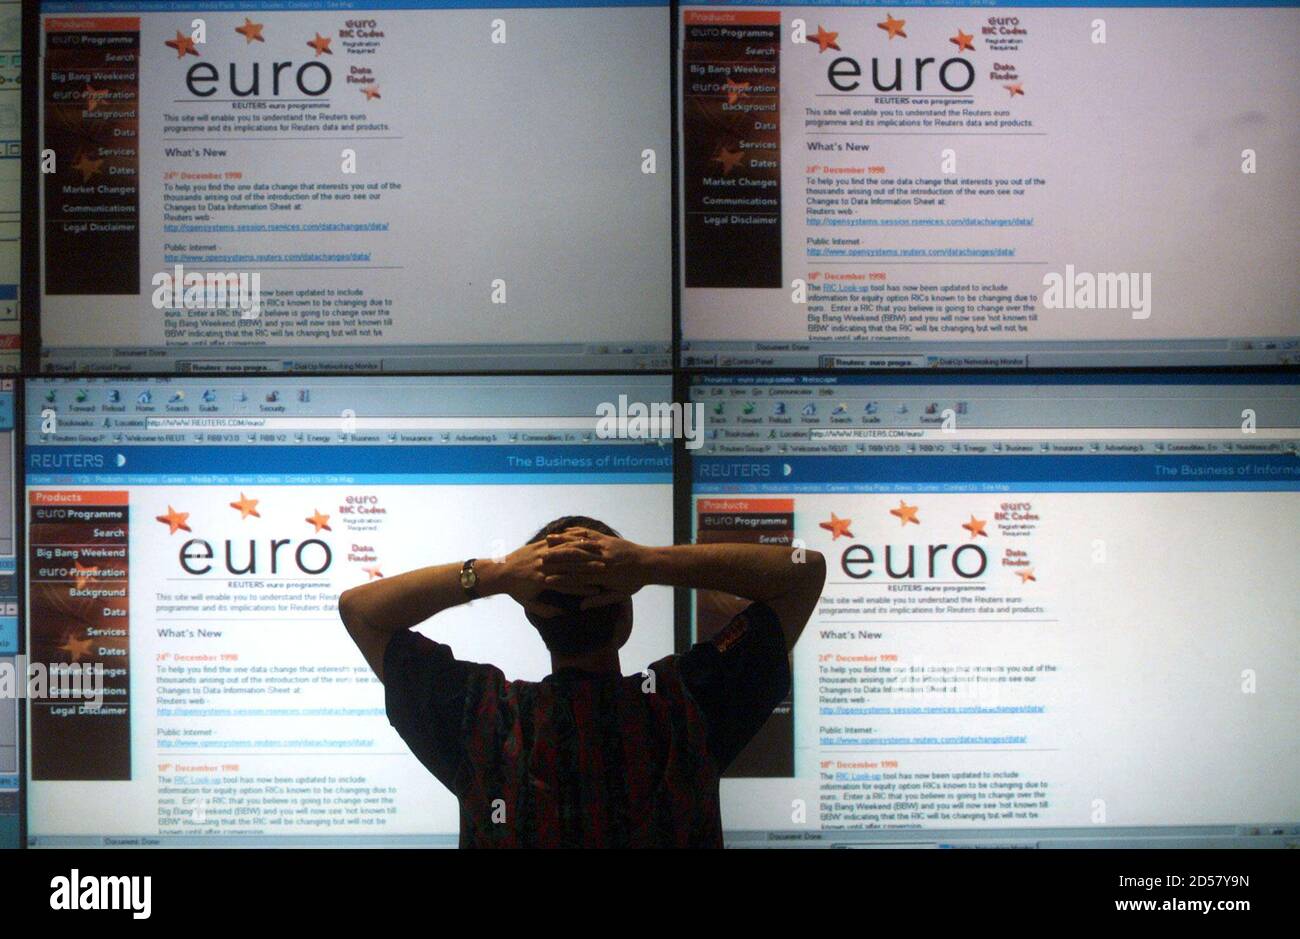 Controller in der Reuters Global Network Control Center sieht riesige Bildschirme mit Informationen über den Euro 3 Januar.  Umgang Zimmer Throughtout der Welt bereiten sich auf die Einführung des Euro Morgen.    ??» Stockfoto